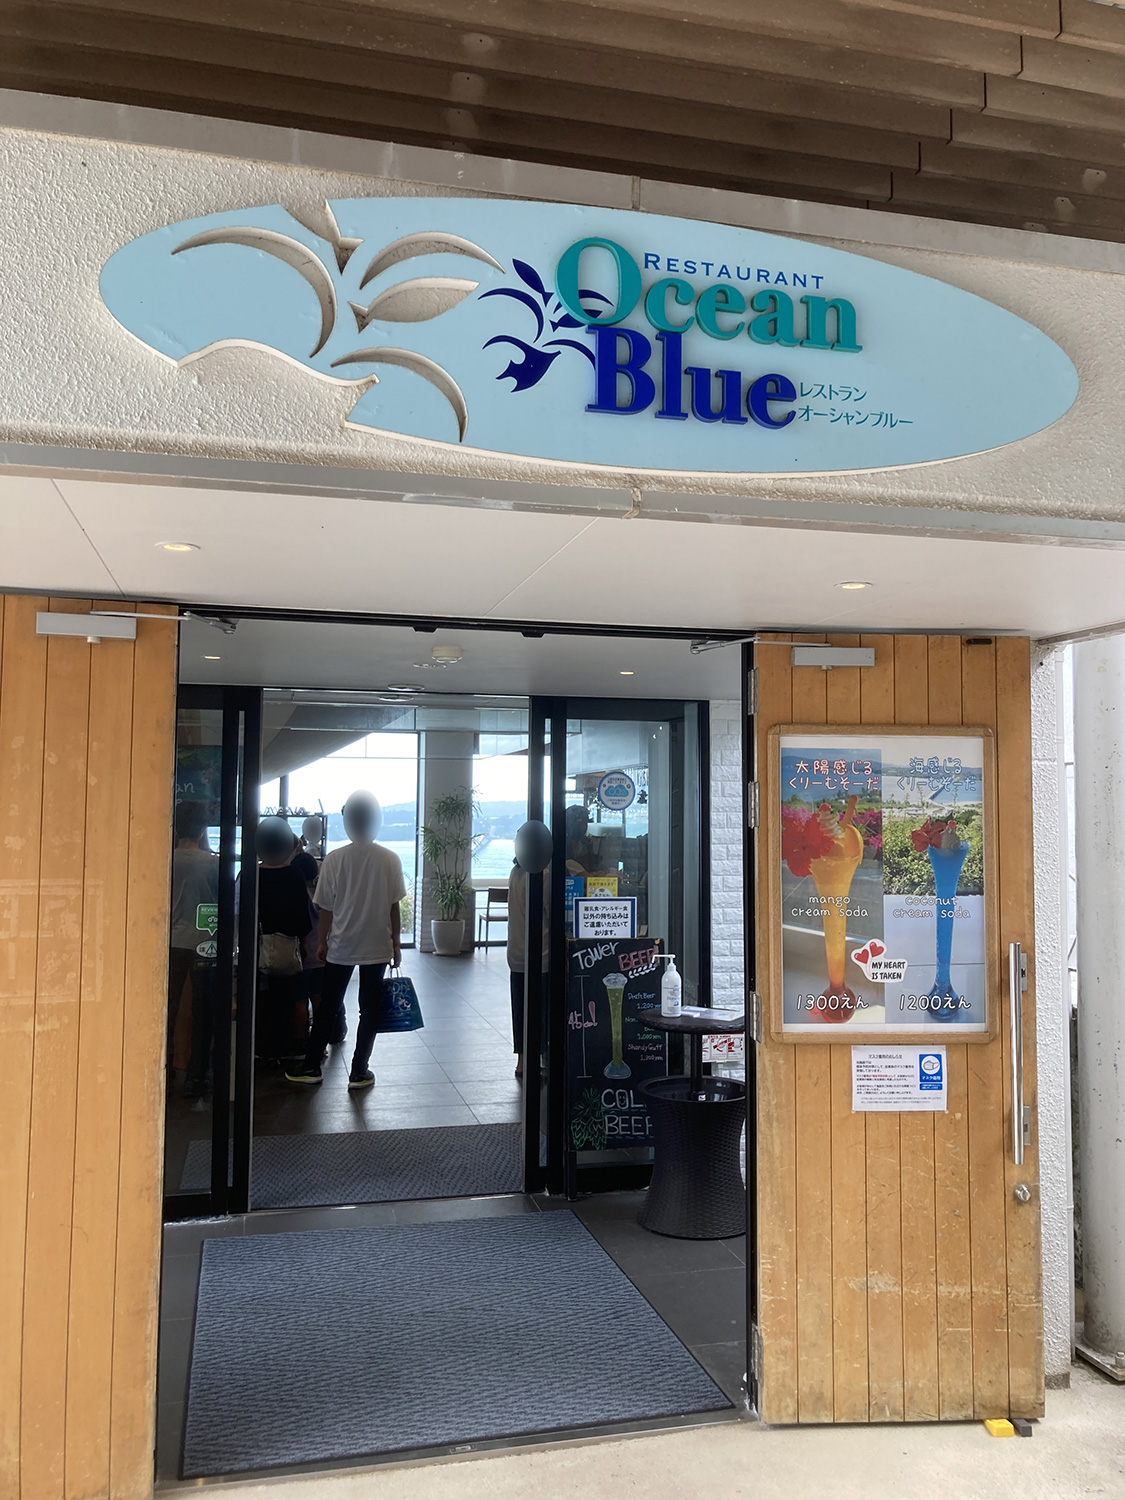 施設内には食事処もあり。<br /><a href="https://www.kouri-oceantower.com/restaurant/">レストラン Ocean Blue</a>。